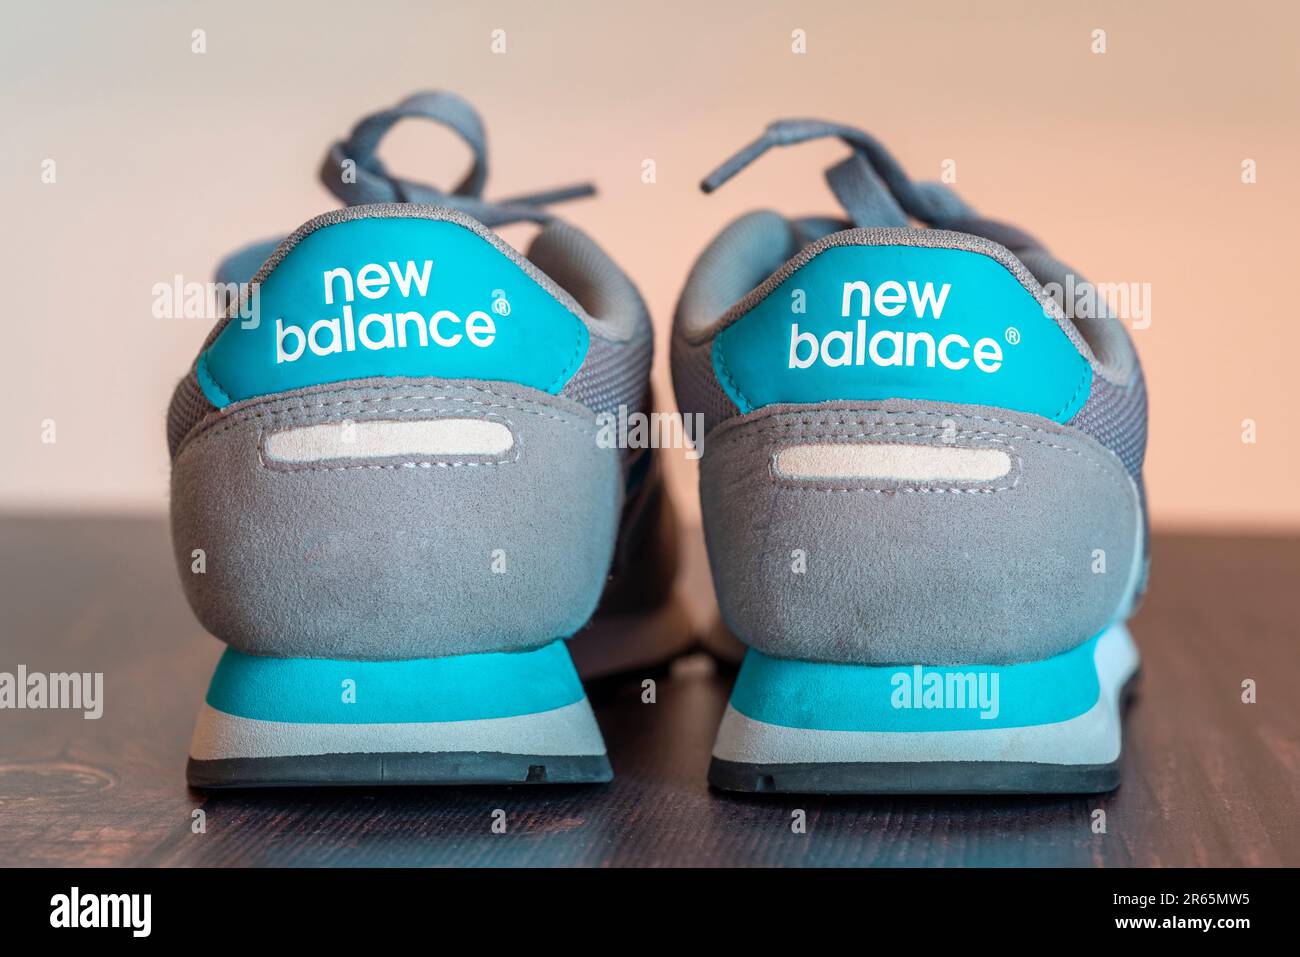 VOICI Une PHOTO DE STOCK - dos d'une paire de baskets New Balance turquoise et gris Banque D'Images